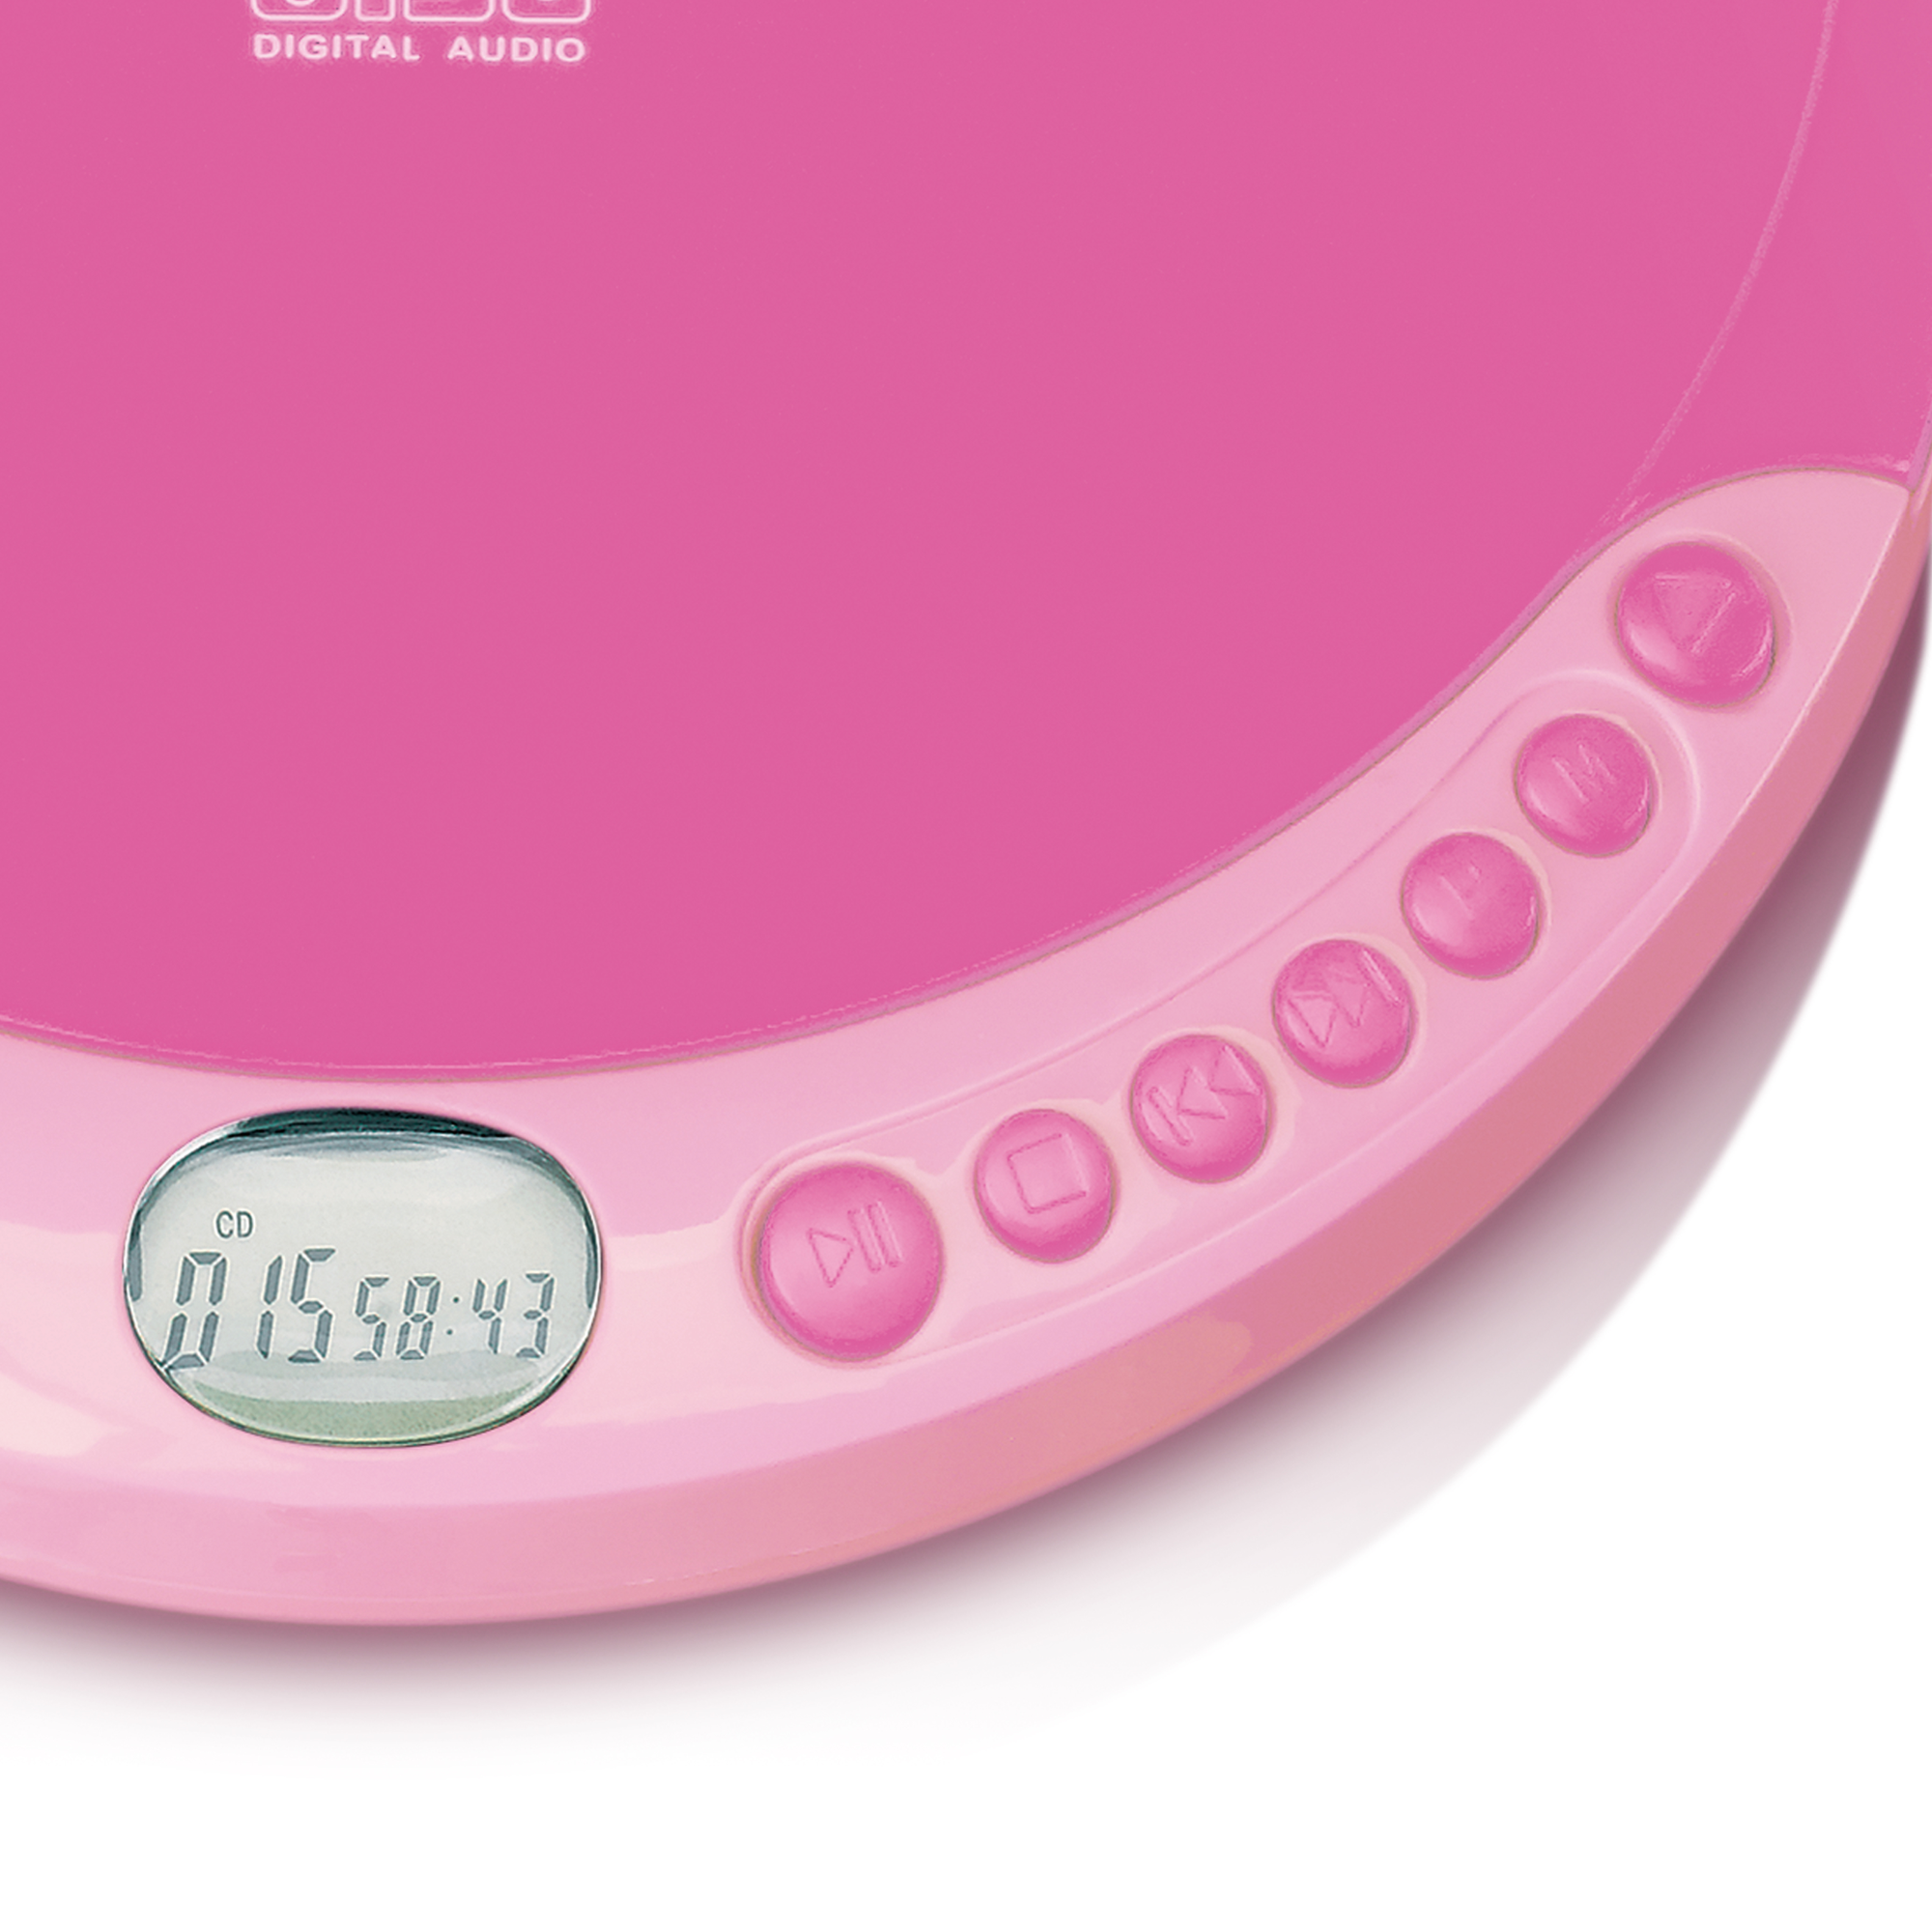 CD-011PK LENCO Pink CD-Spieler